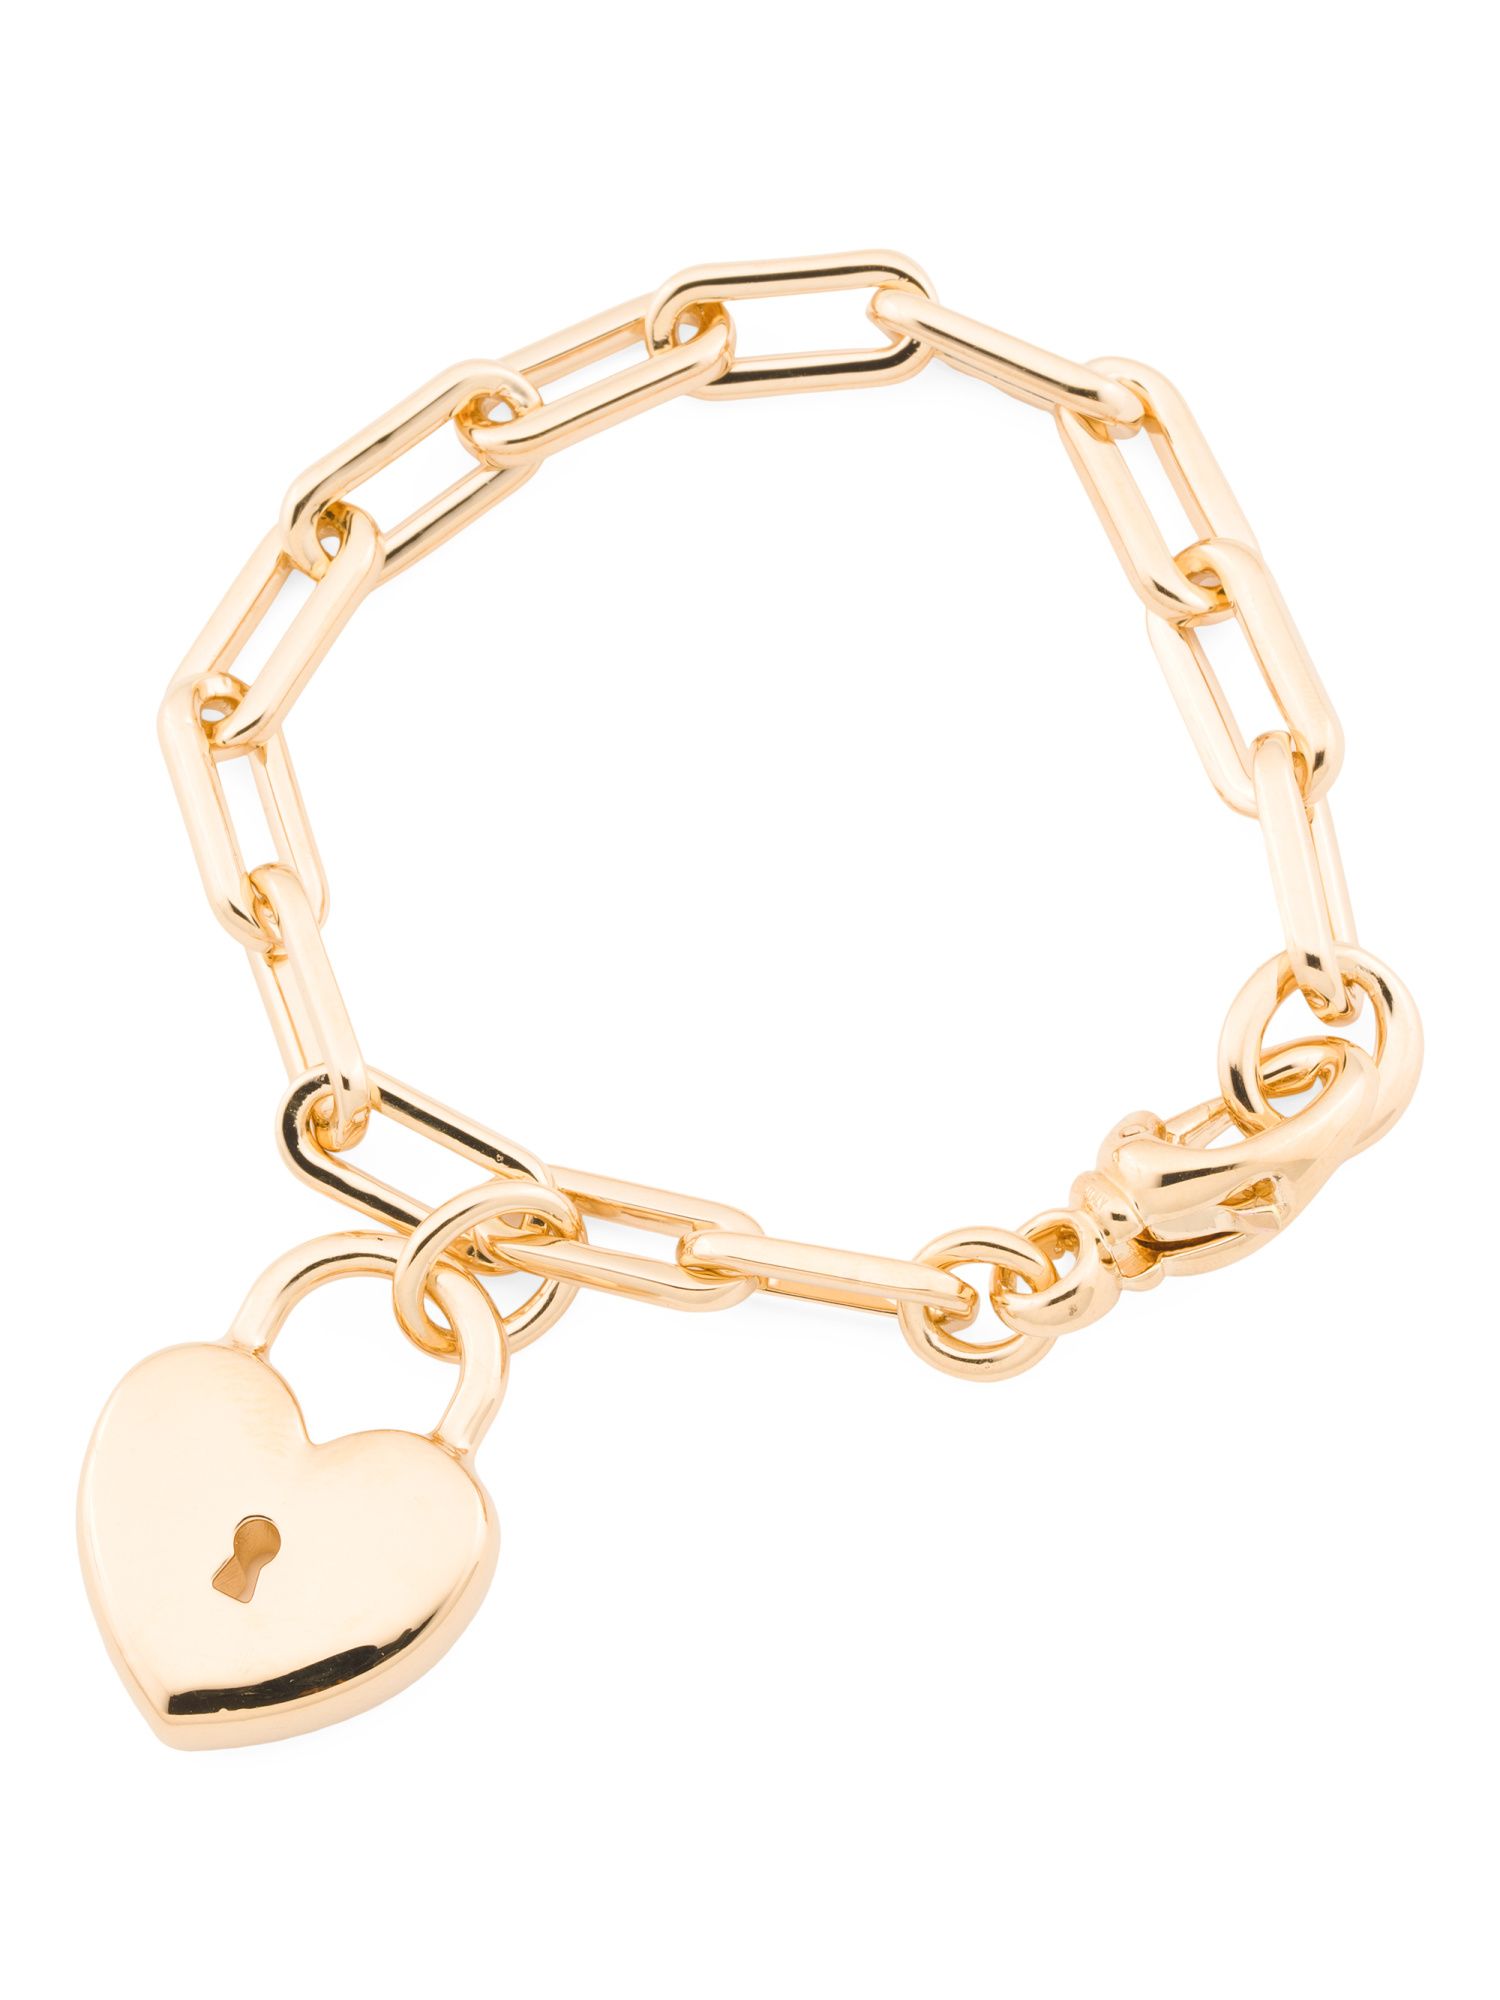 Made In Italy 14k Gold Heart Lock Charm Bracelet | TJ Maxx